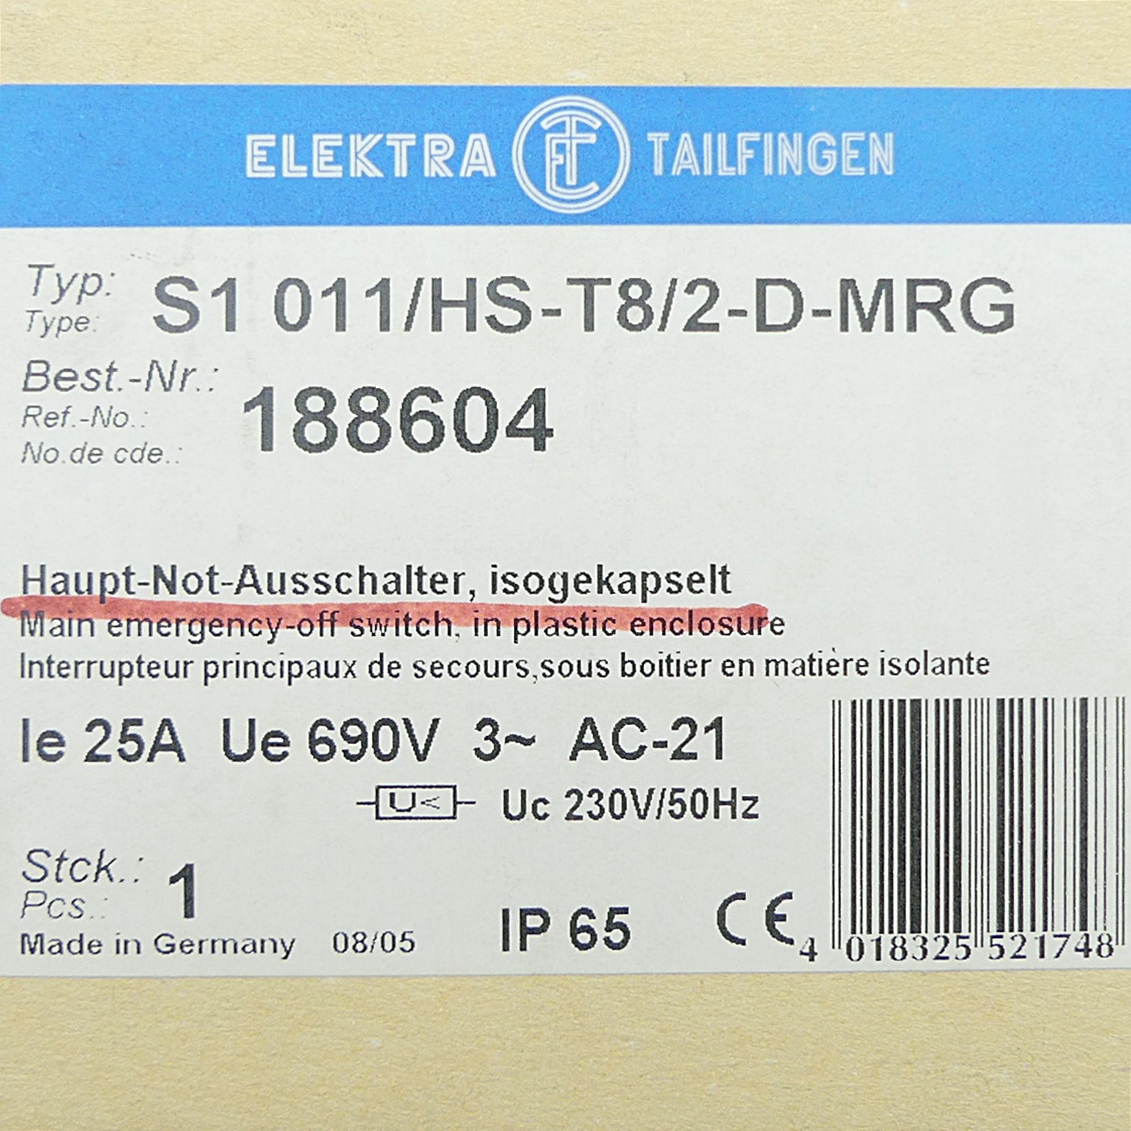 Maschinenteil24, Elektra Haupt-Not-Ausschalter, isogekapselt S1 011/HS-T8/2 -D-MRG